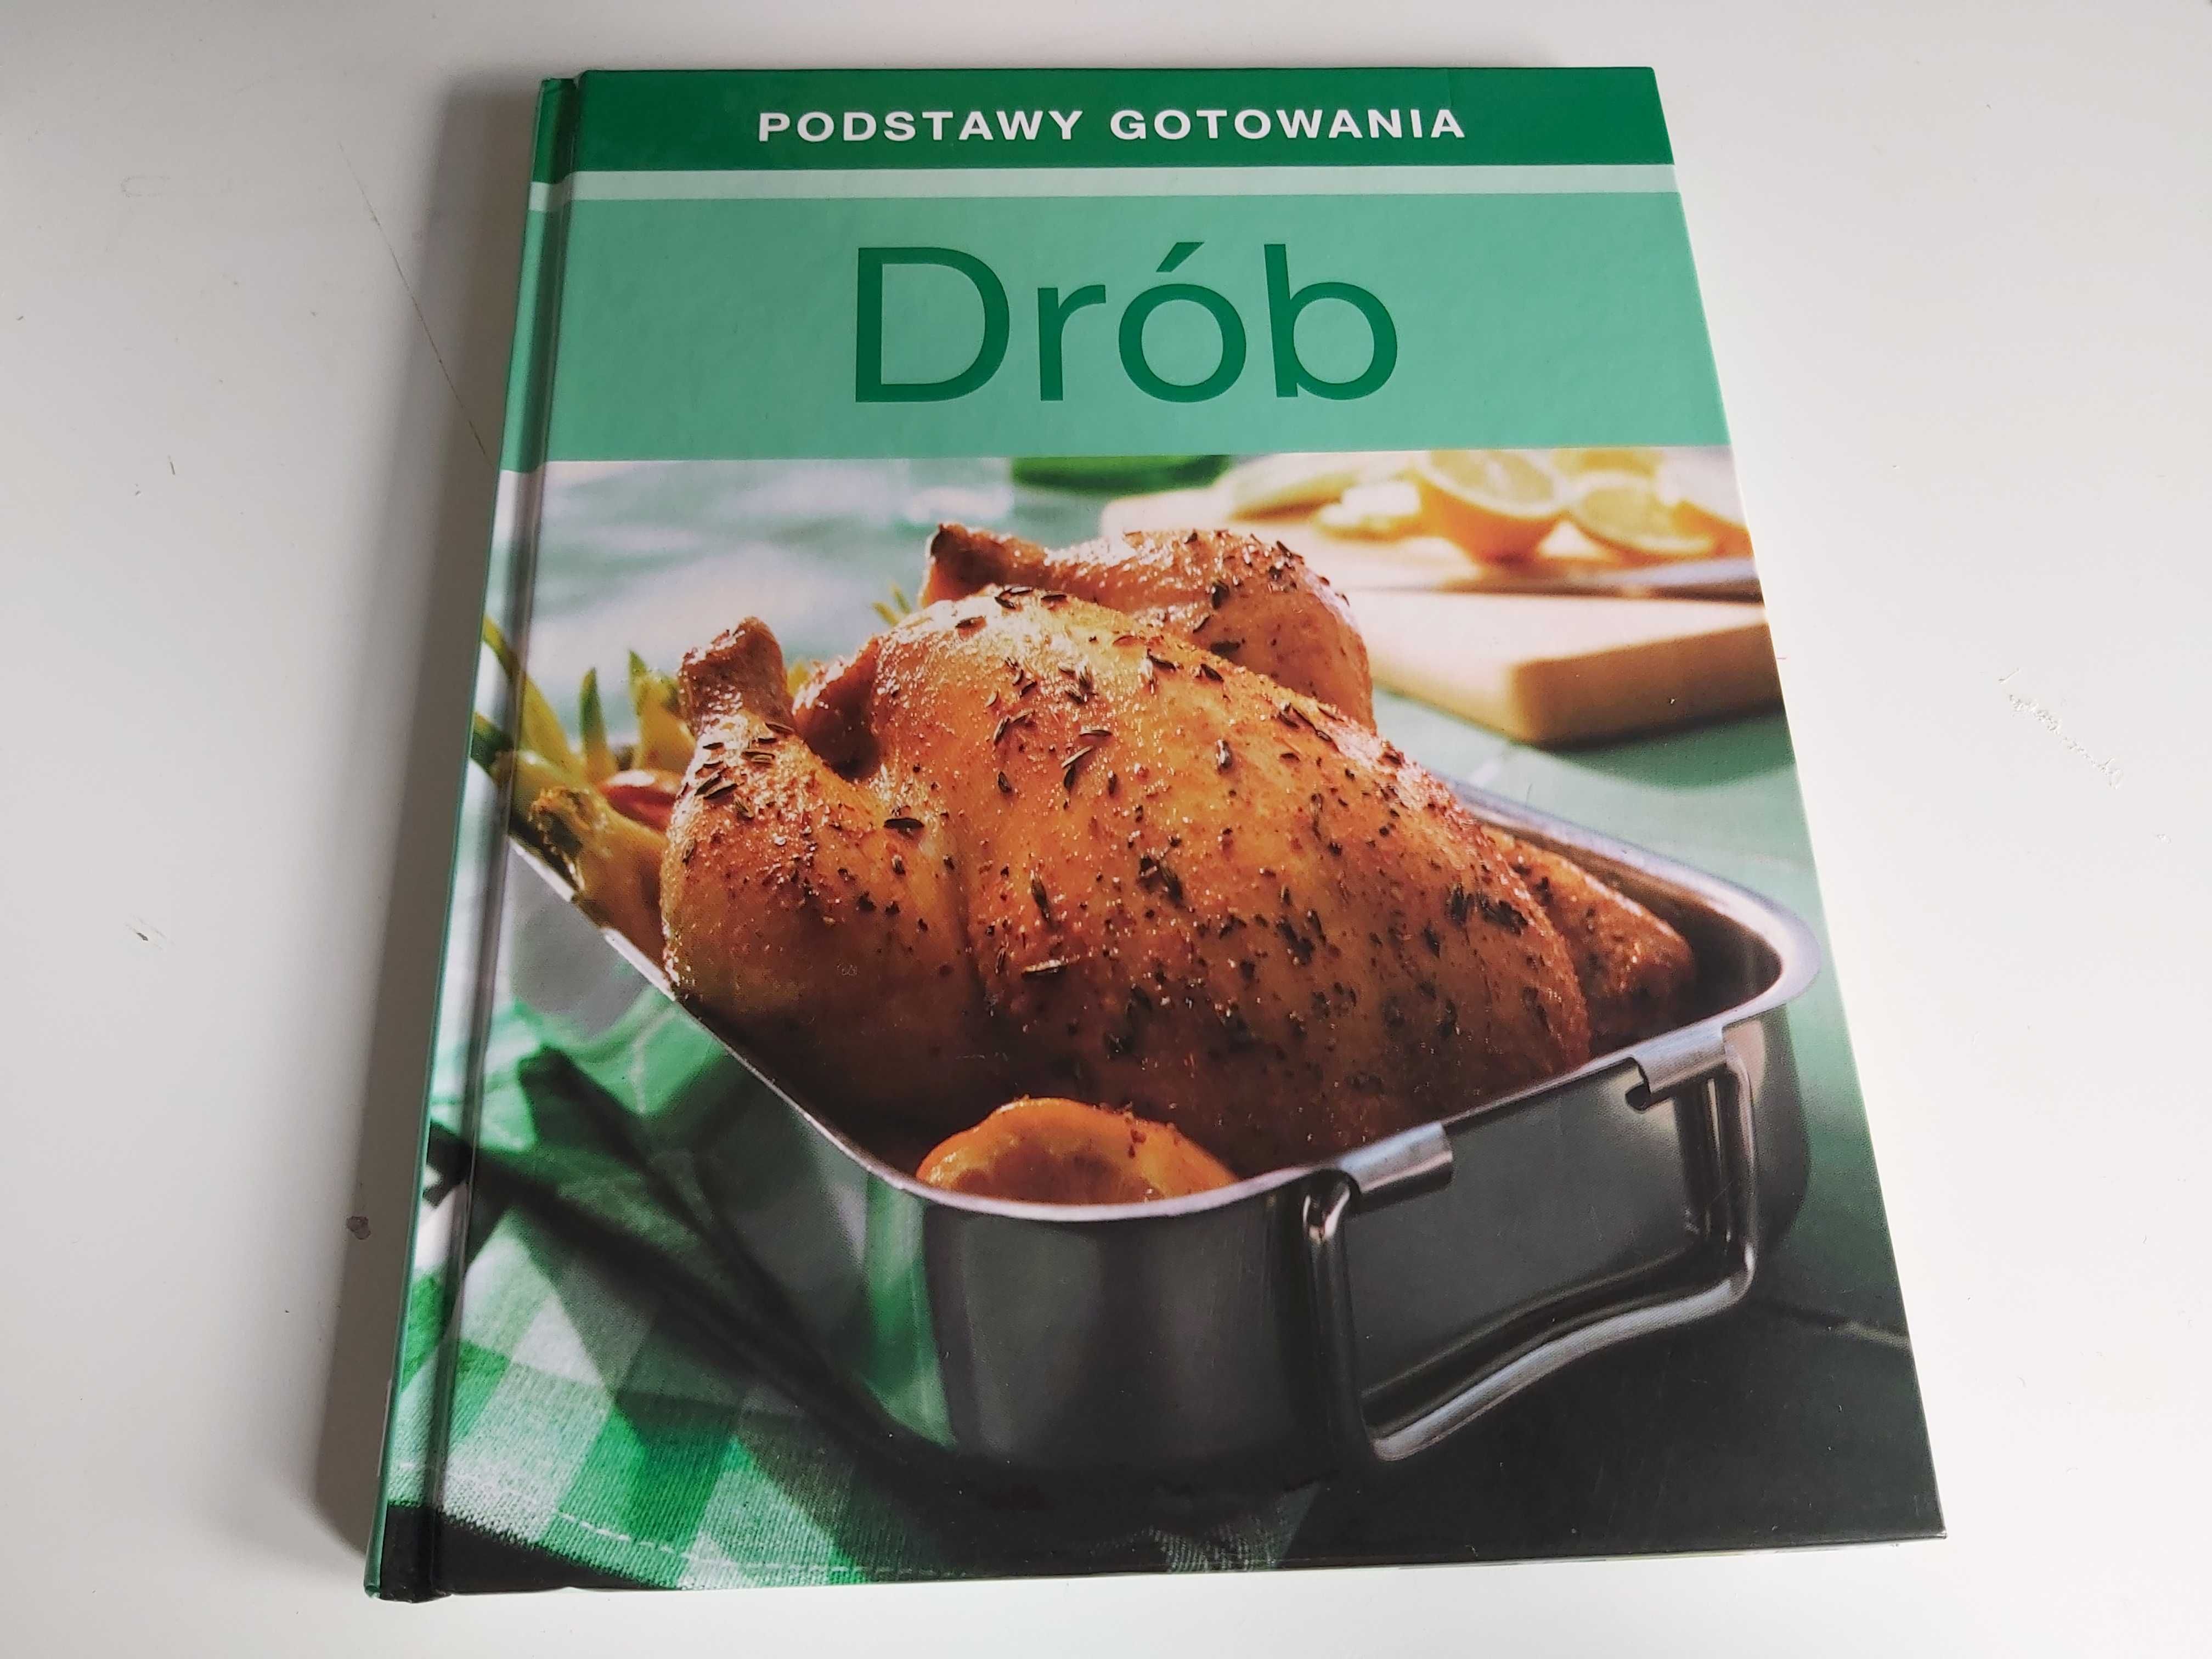 Drób - Podstawy gotowania - książka kucharska